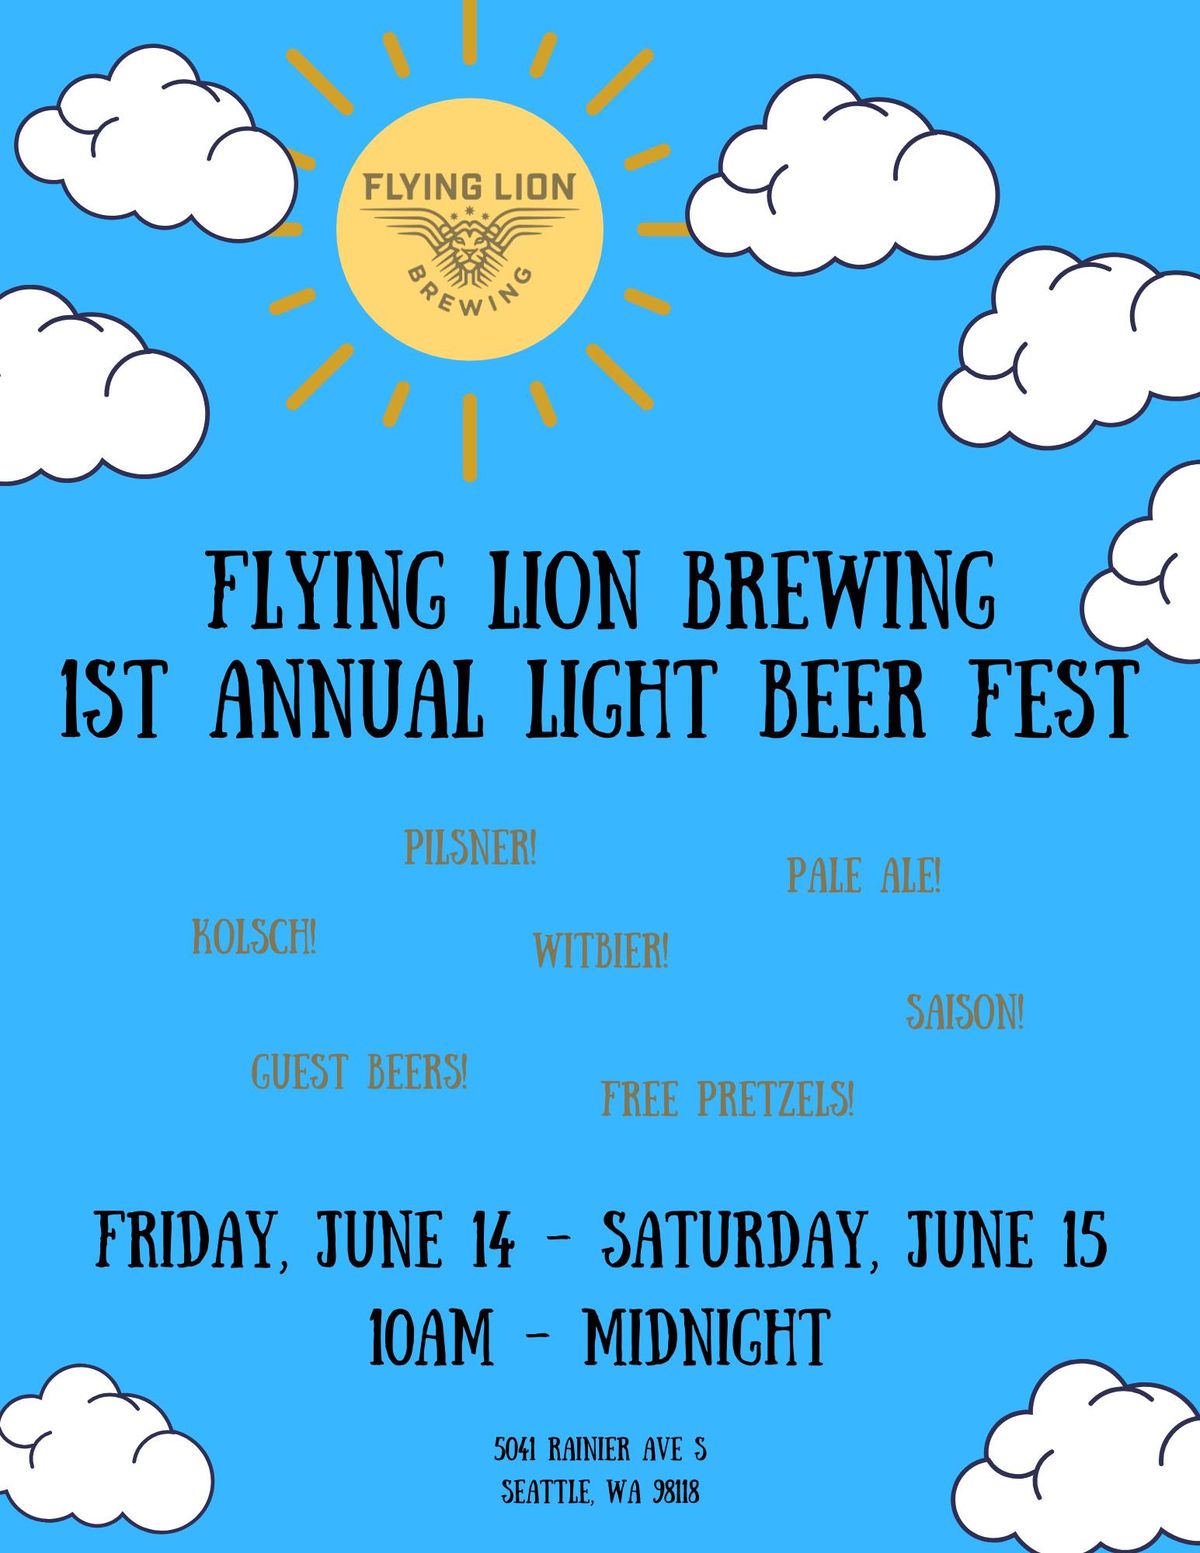 1st Annual Light Beer Fest